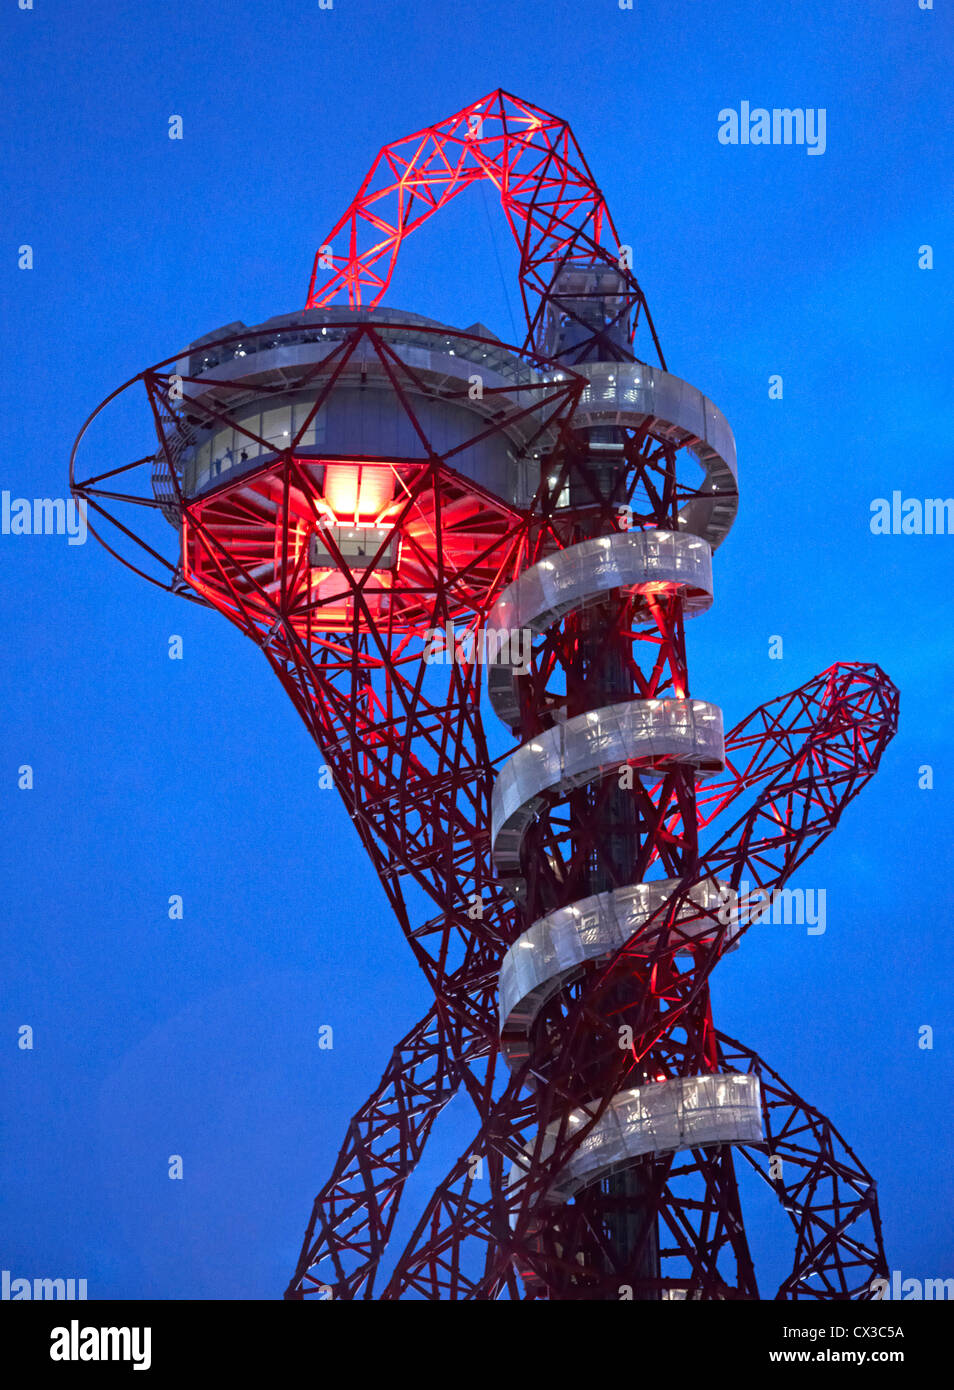 Die Umlaufbahn, die Olympischen Spiele 2012 in London, London, Vereinigtes Königreich. Architekt: Anish Kapoor, 2012. Twilight-Blick von unten. Stockfoto